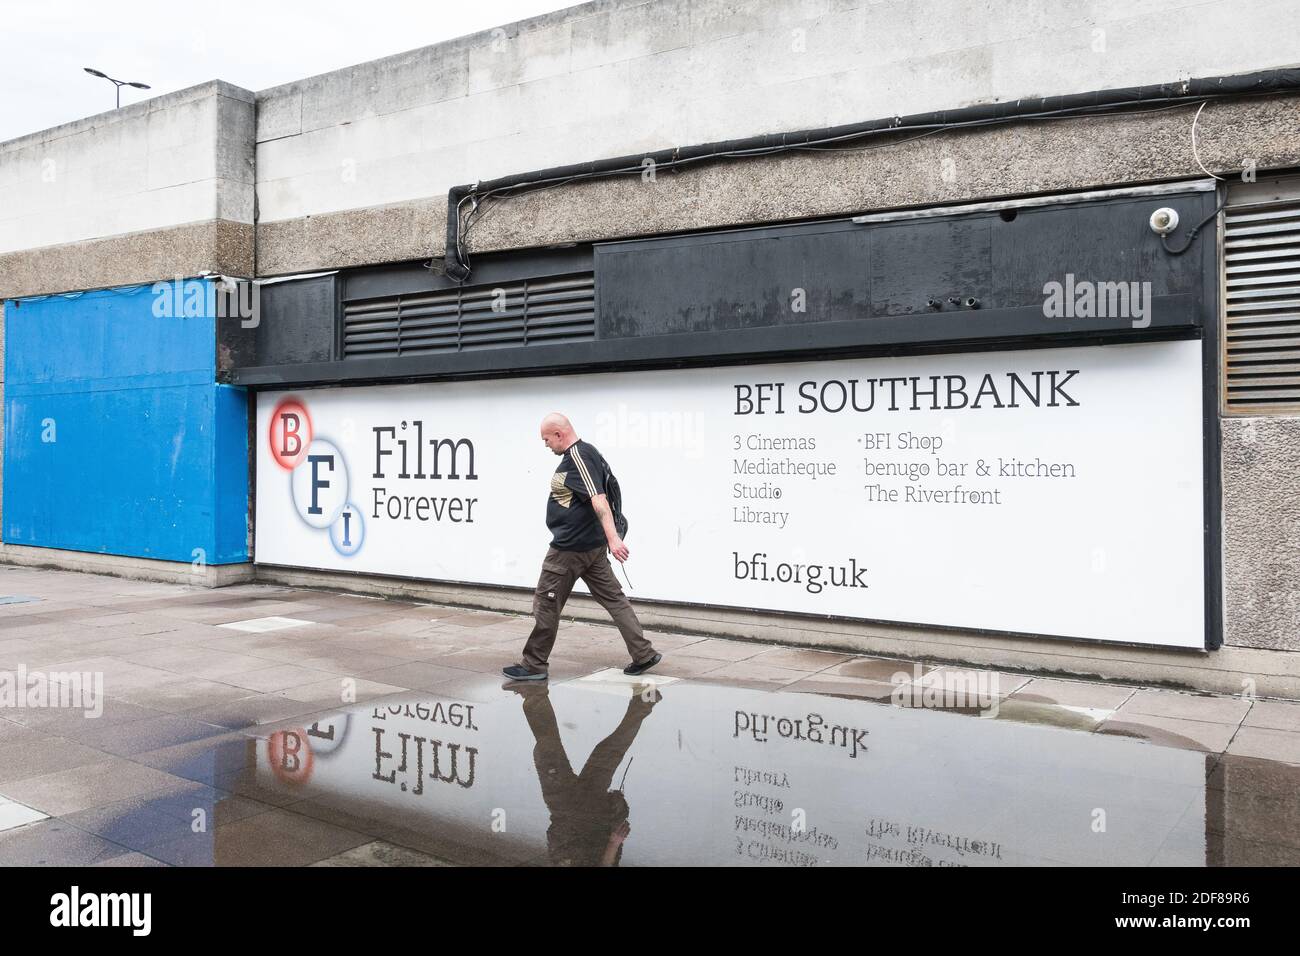 Film Forever, BFI Southbank Center, Londres, Inglaterra, Reino Unido Foto de stock